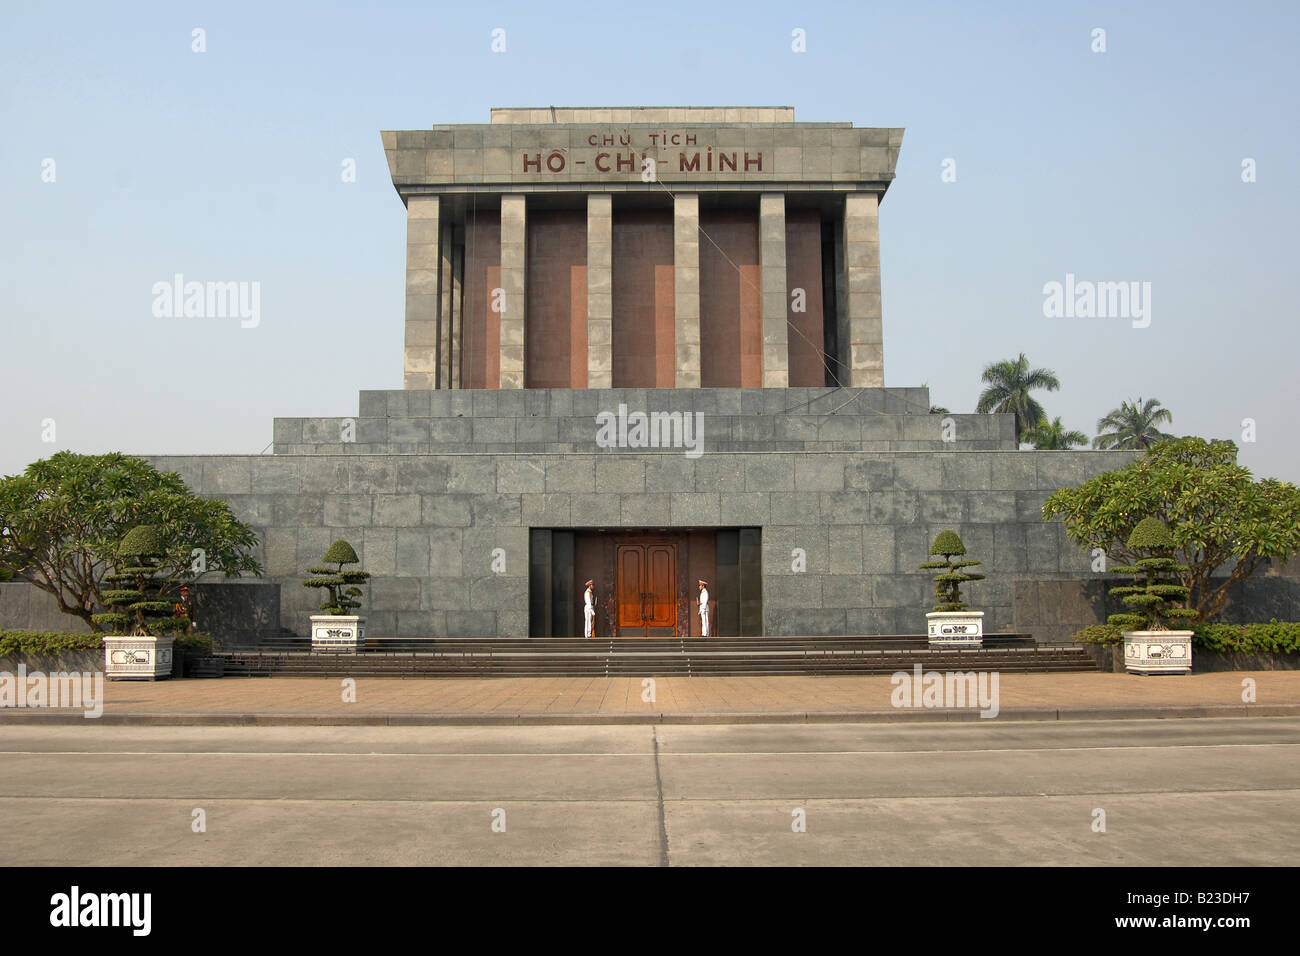 Facade of mausoleum, Ho Chi Minh Mausoleum, Hanoi, Vietnam Stock Photo